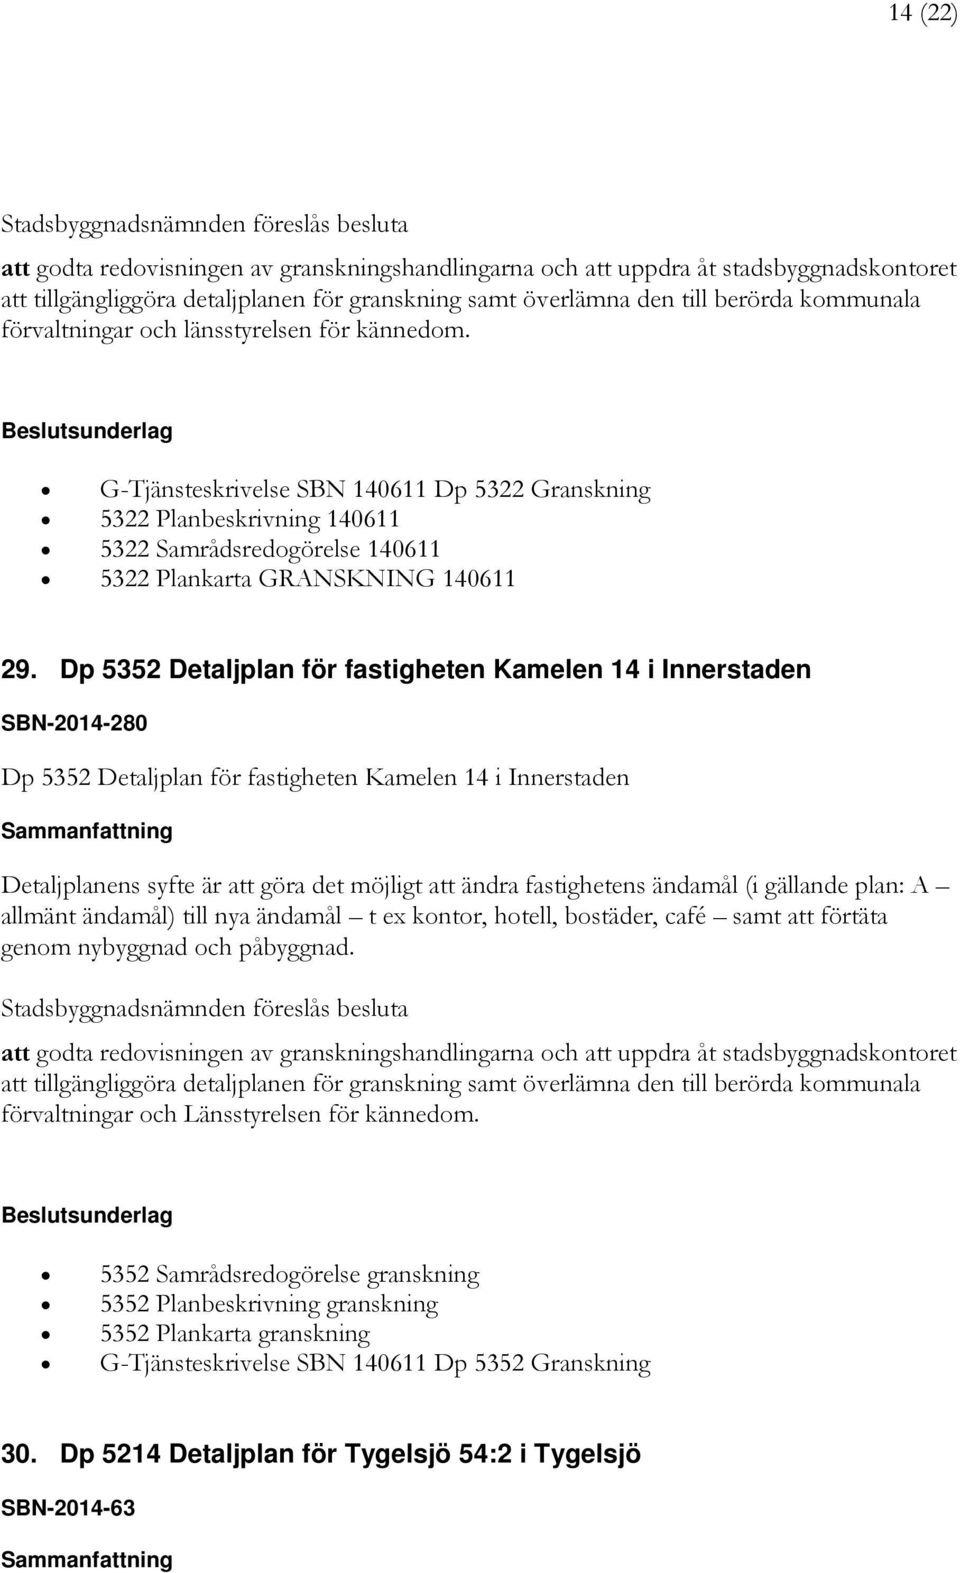 Dp 5352 Detaljplan för fastigheten Kamelen 14 i Innerstaden SBN-2014-280 Dp 5352 Detaljplan för fastigheten Kamelen 14 i Innerstaden Detaljplanens syfte är att göra det möjligt att ändra fastighetens